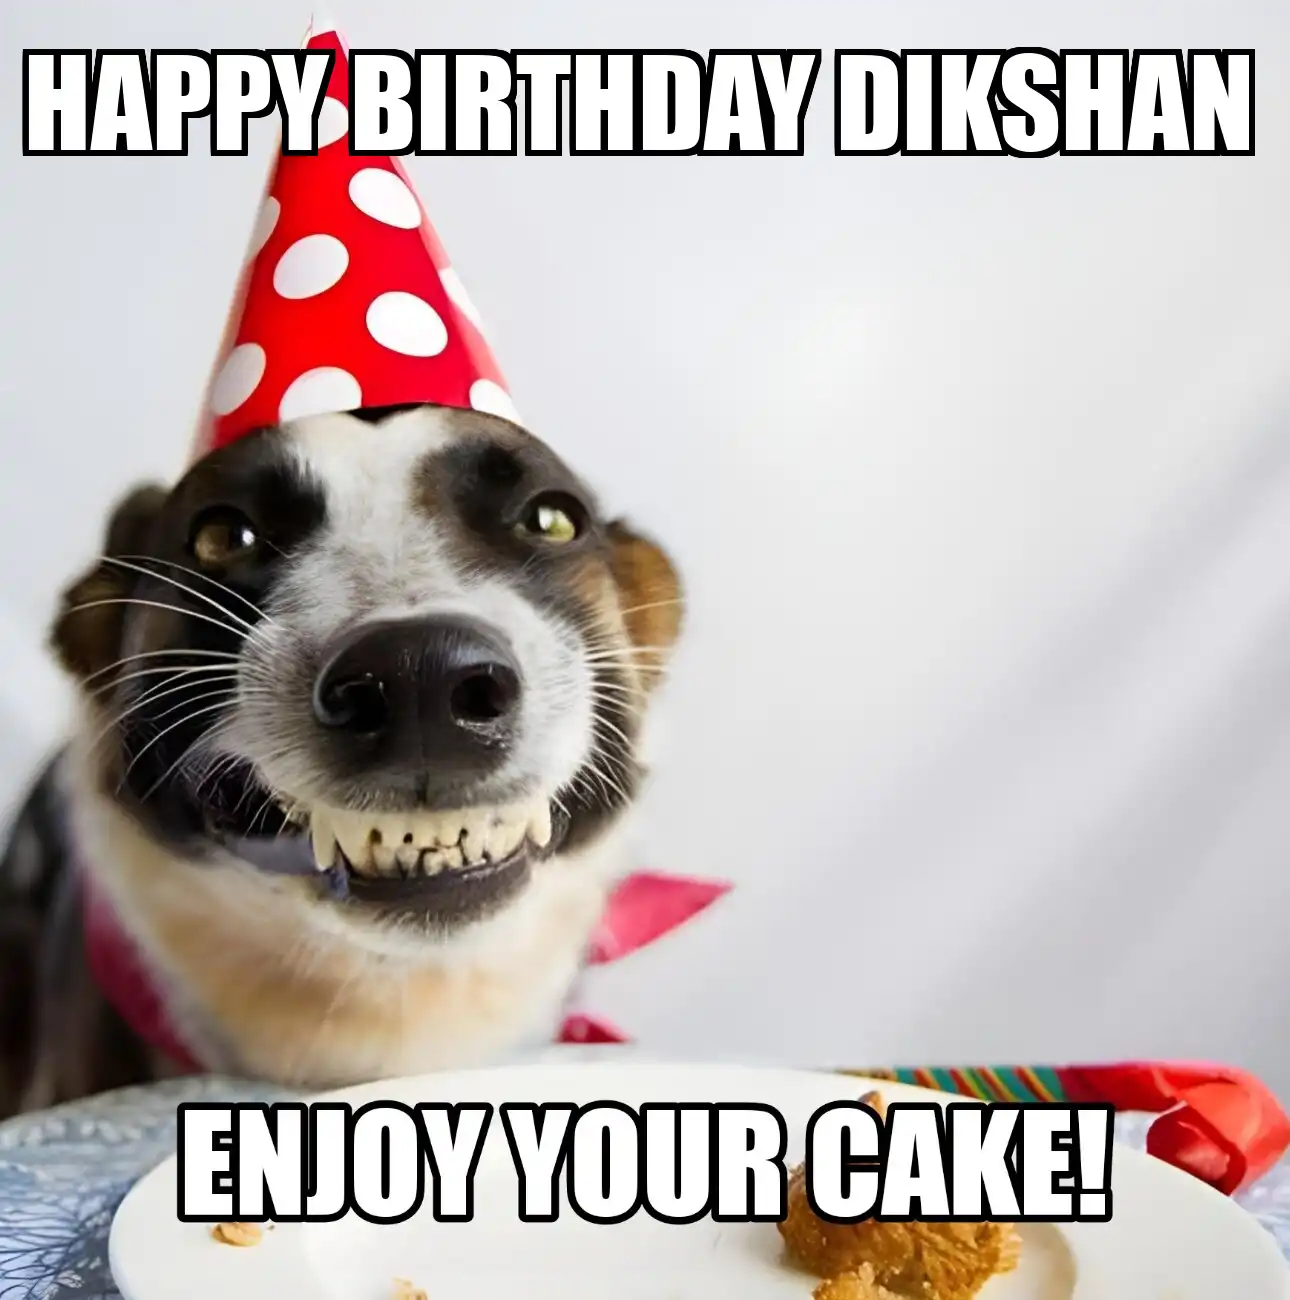 Happy Birthday Dikshan Enjoy Your Cake Dog Meme